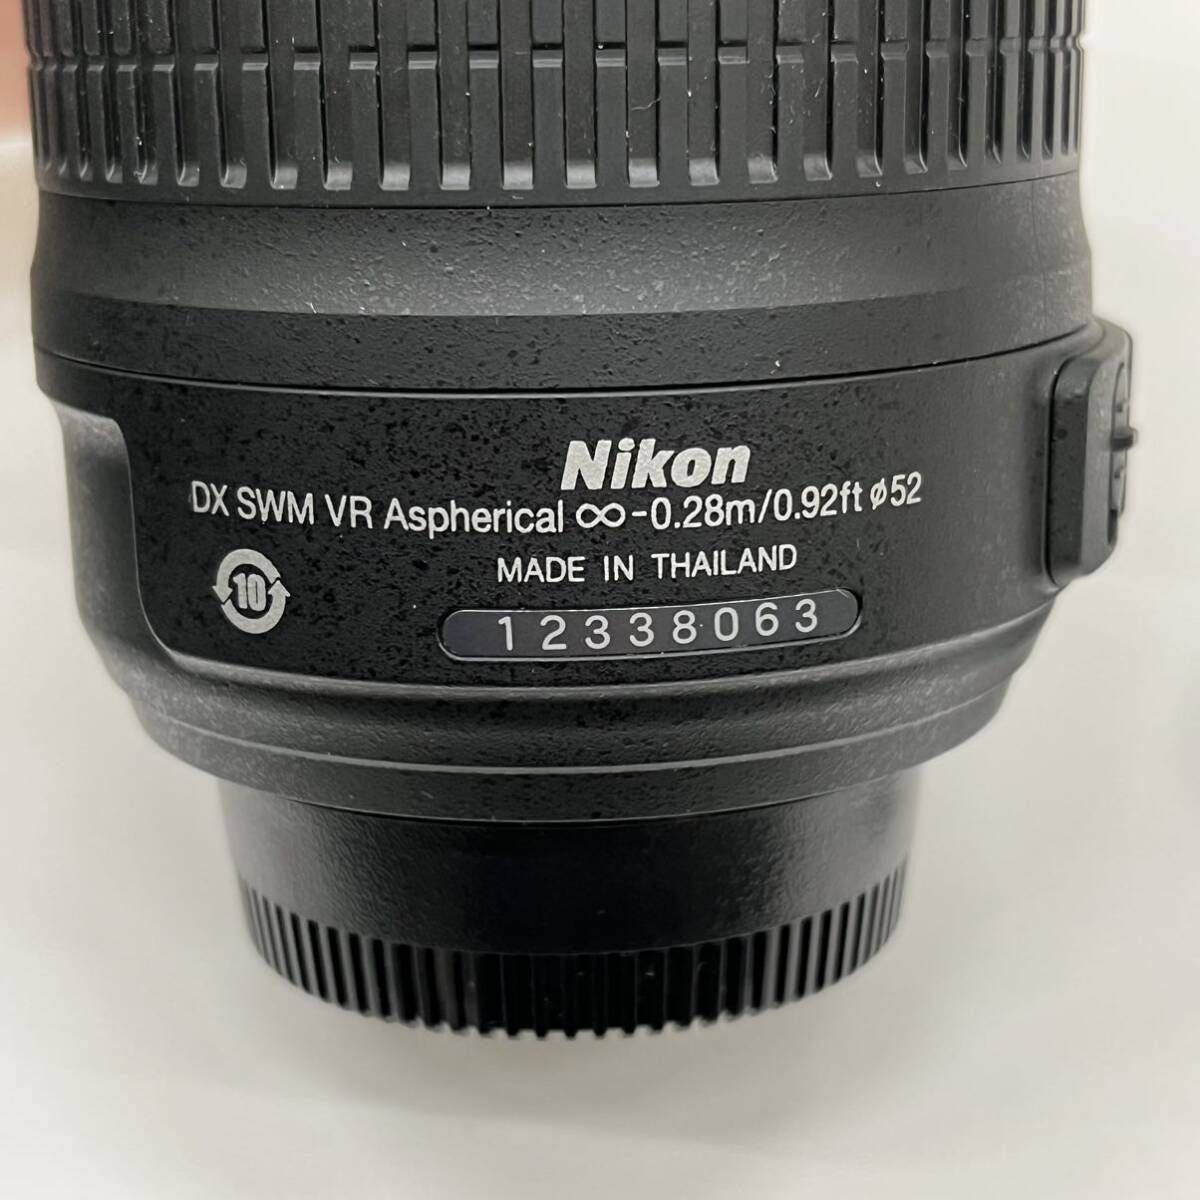 B4119【中古品】/ Nikon AF-S NIKKOR 18-55mm 1:3.5-5.6G レンズ VR DX SWM Aspherical ∞-0.28m/0.92ft 52mm ニコン_画像3